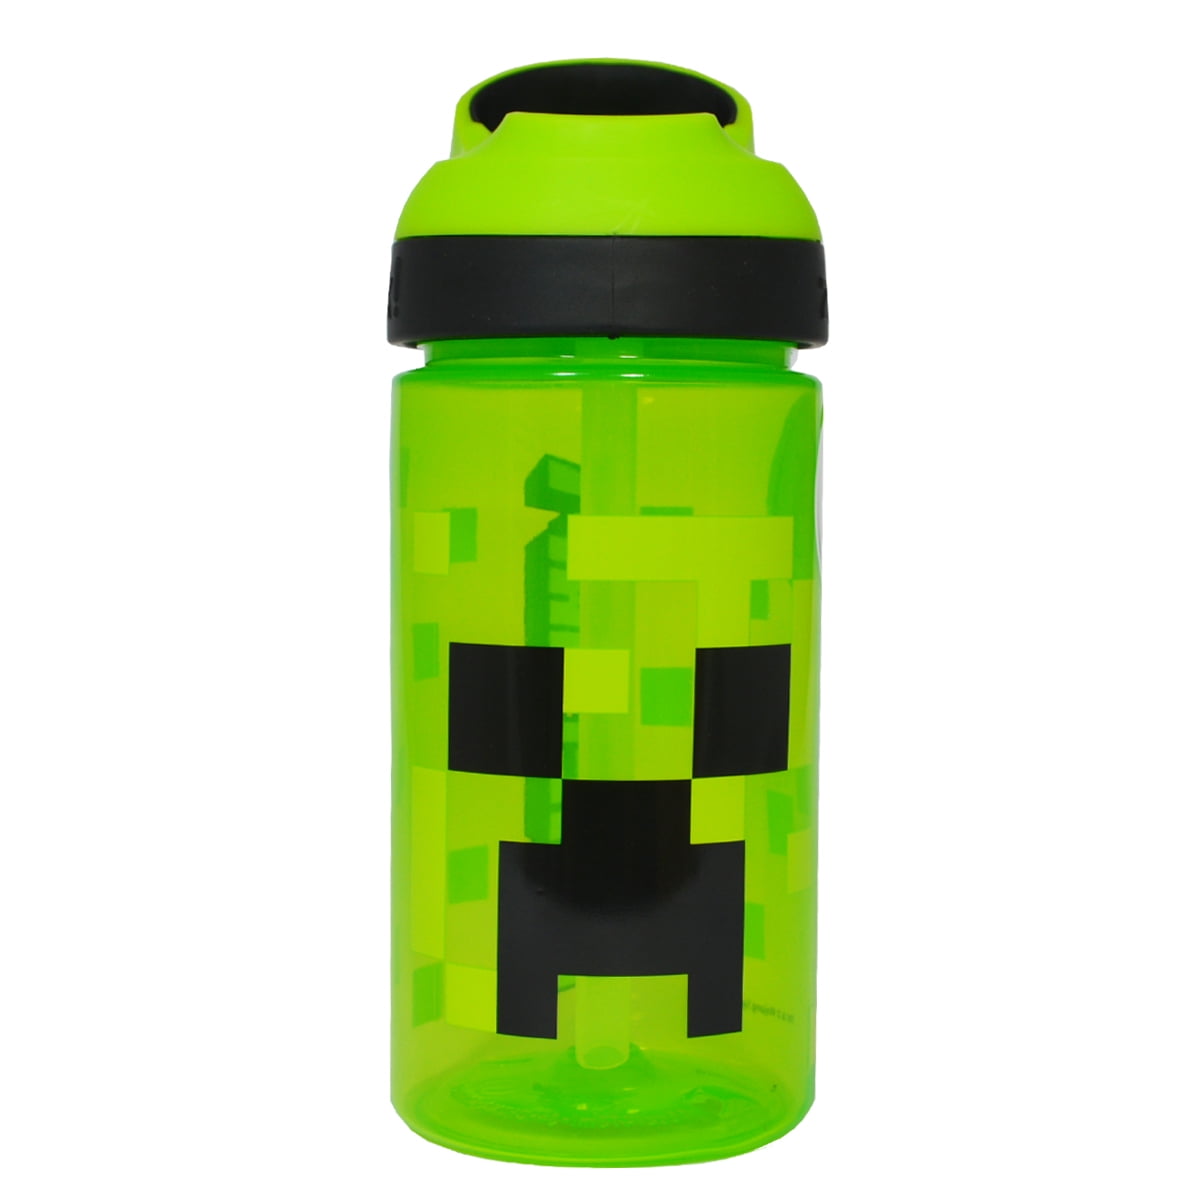 EPIC Minecraft water bottle : r/Minecraft